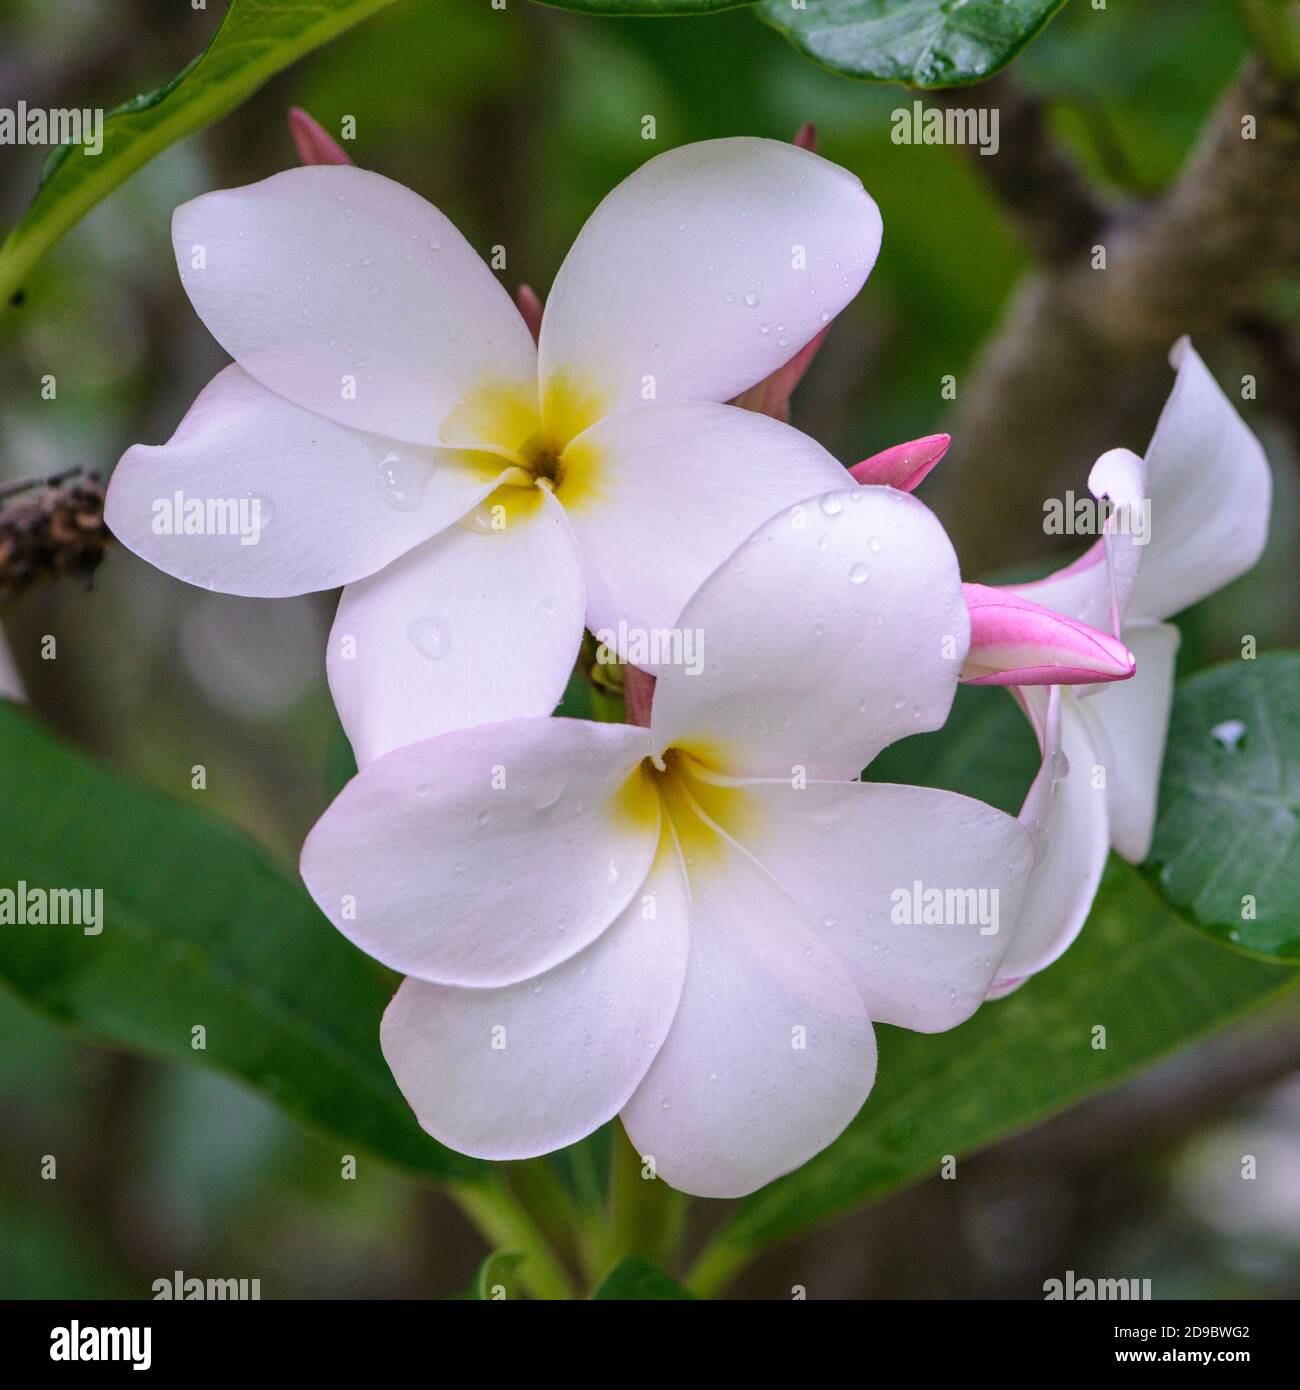 white plumeria or frangipani flowers Stock Photo